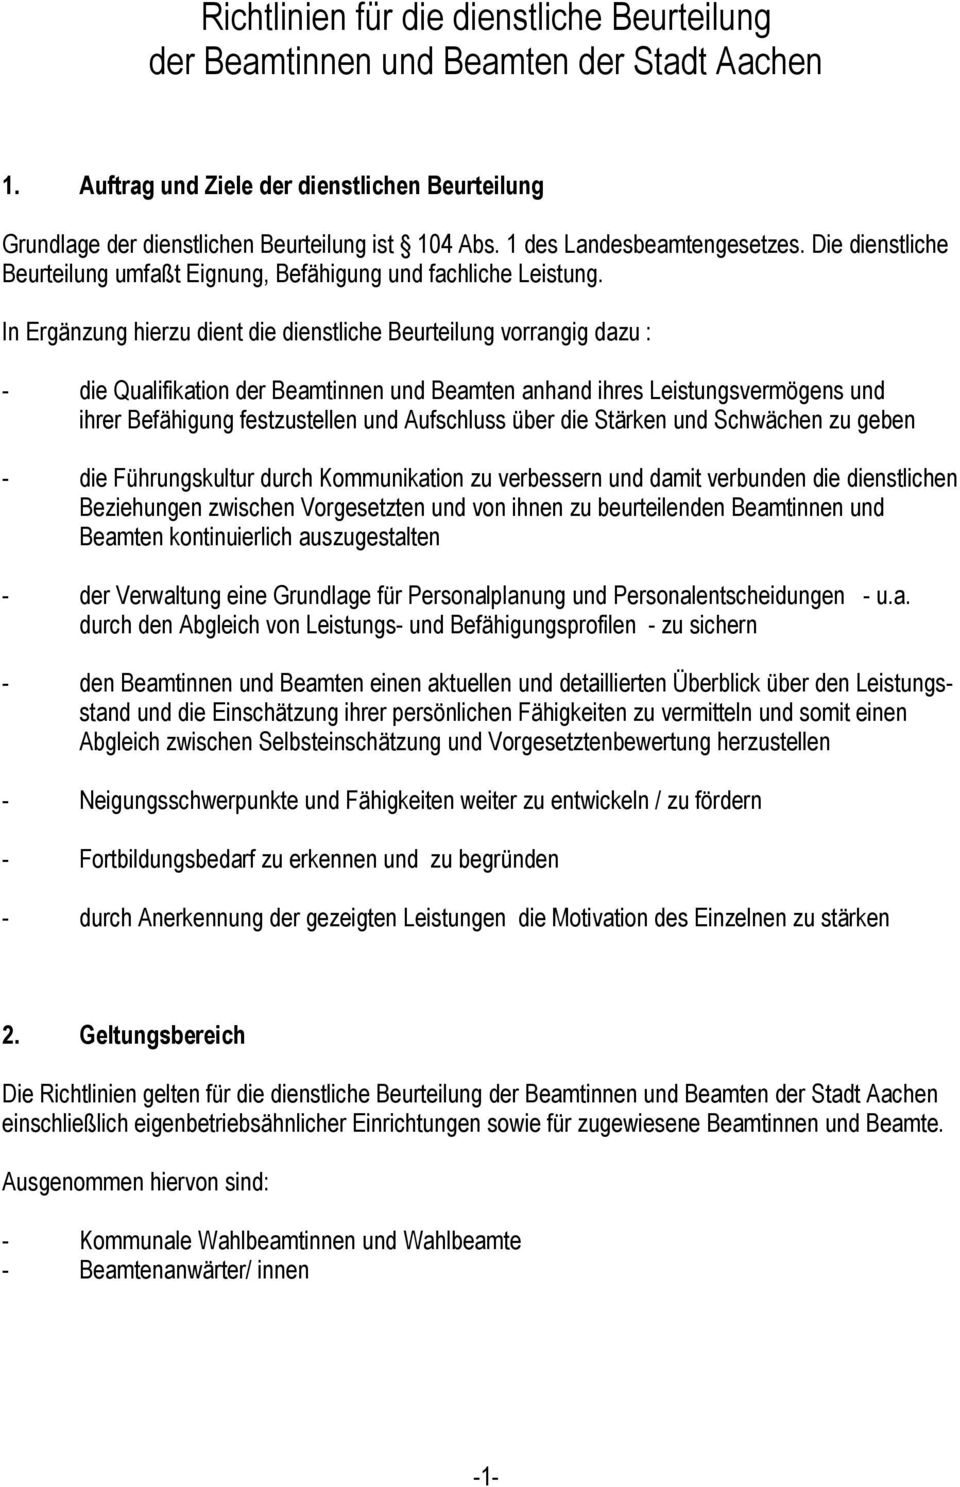 Richtlinien Fur Die Dienstliche Beurteilung Der Beamtinnen Und Beamten Der Stadt Aachen Pdf Free Download